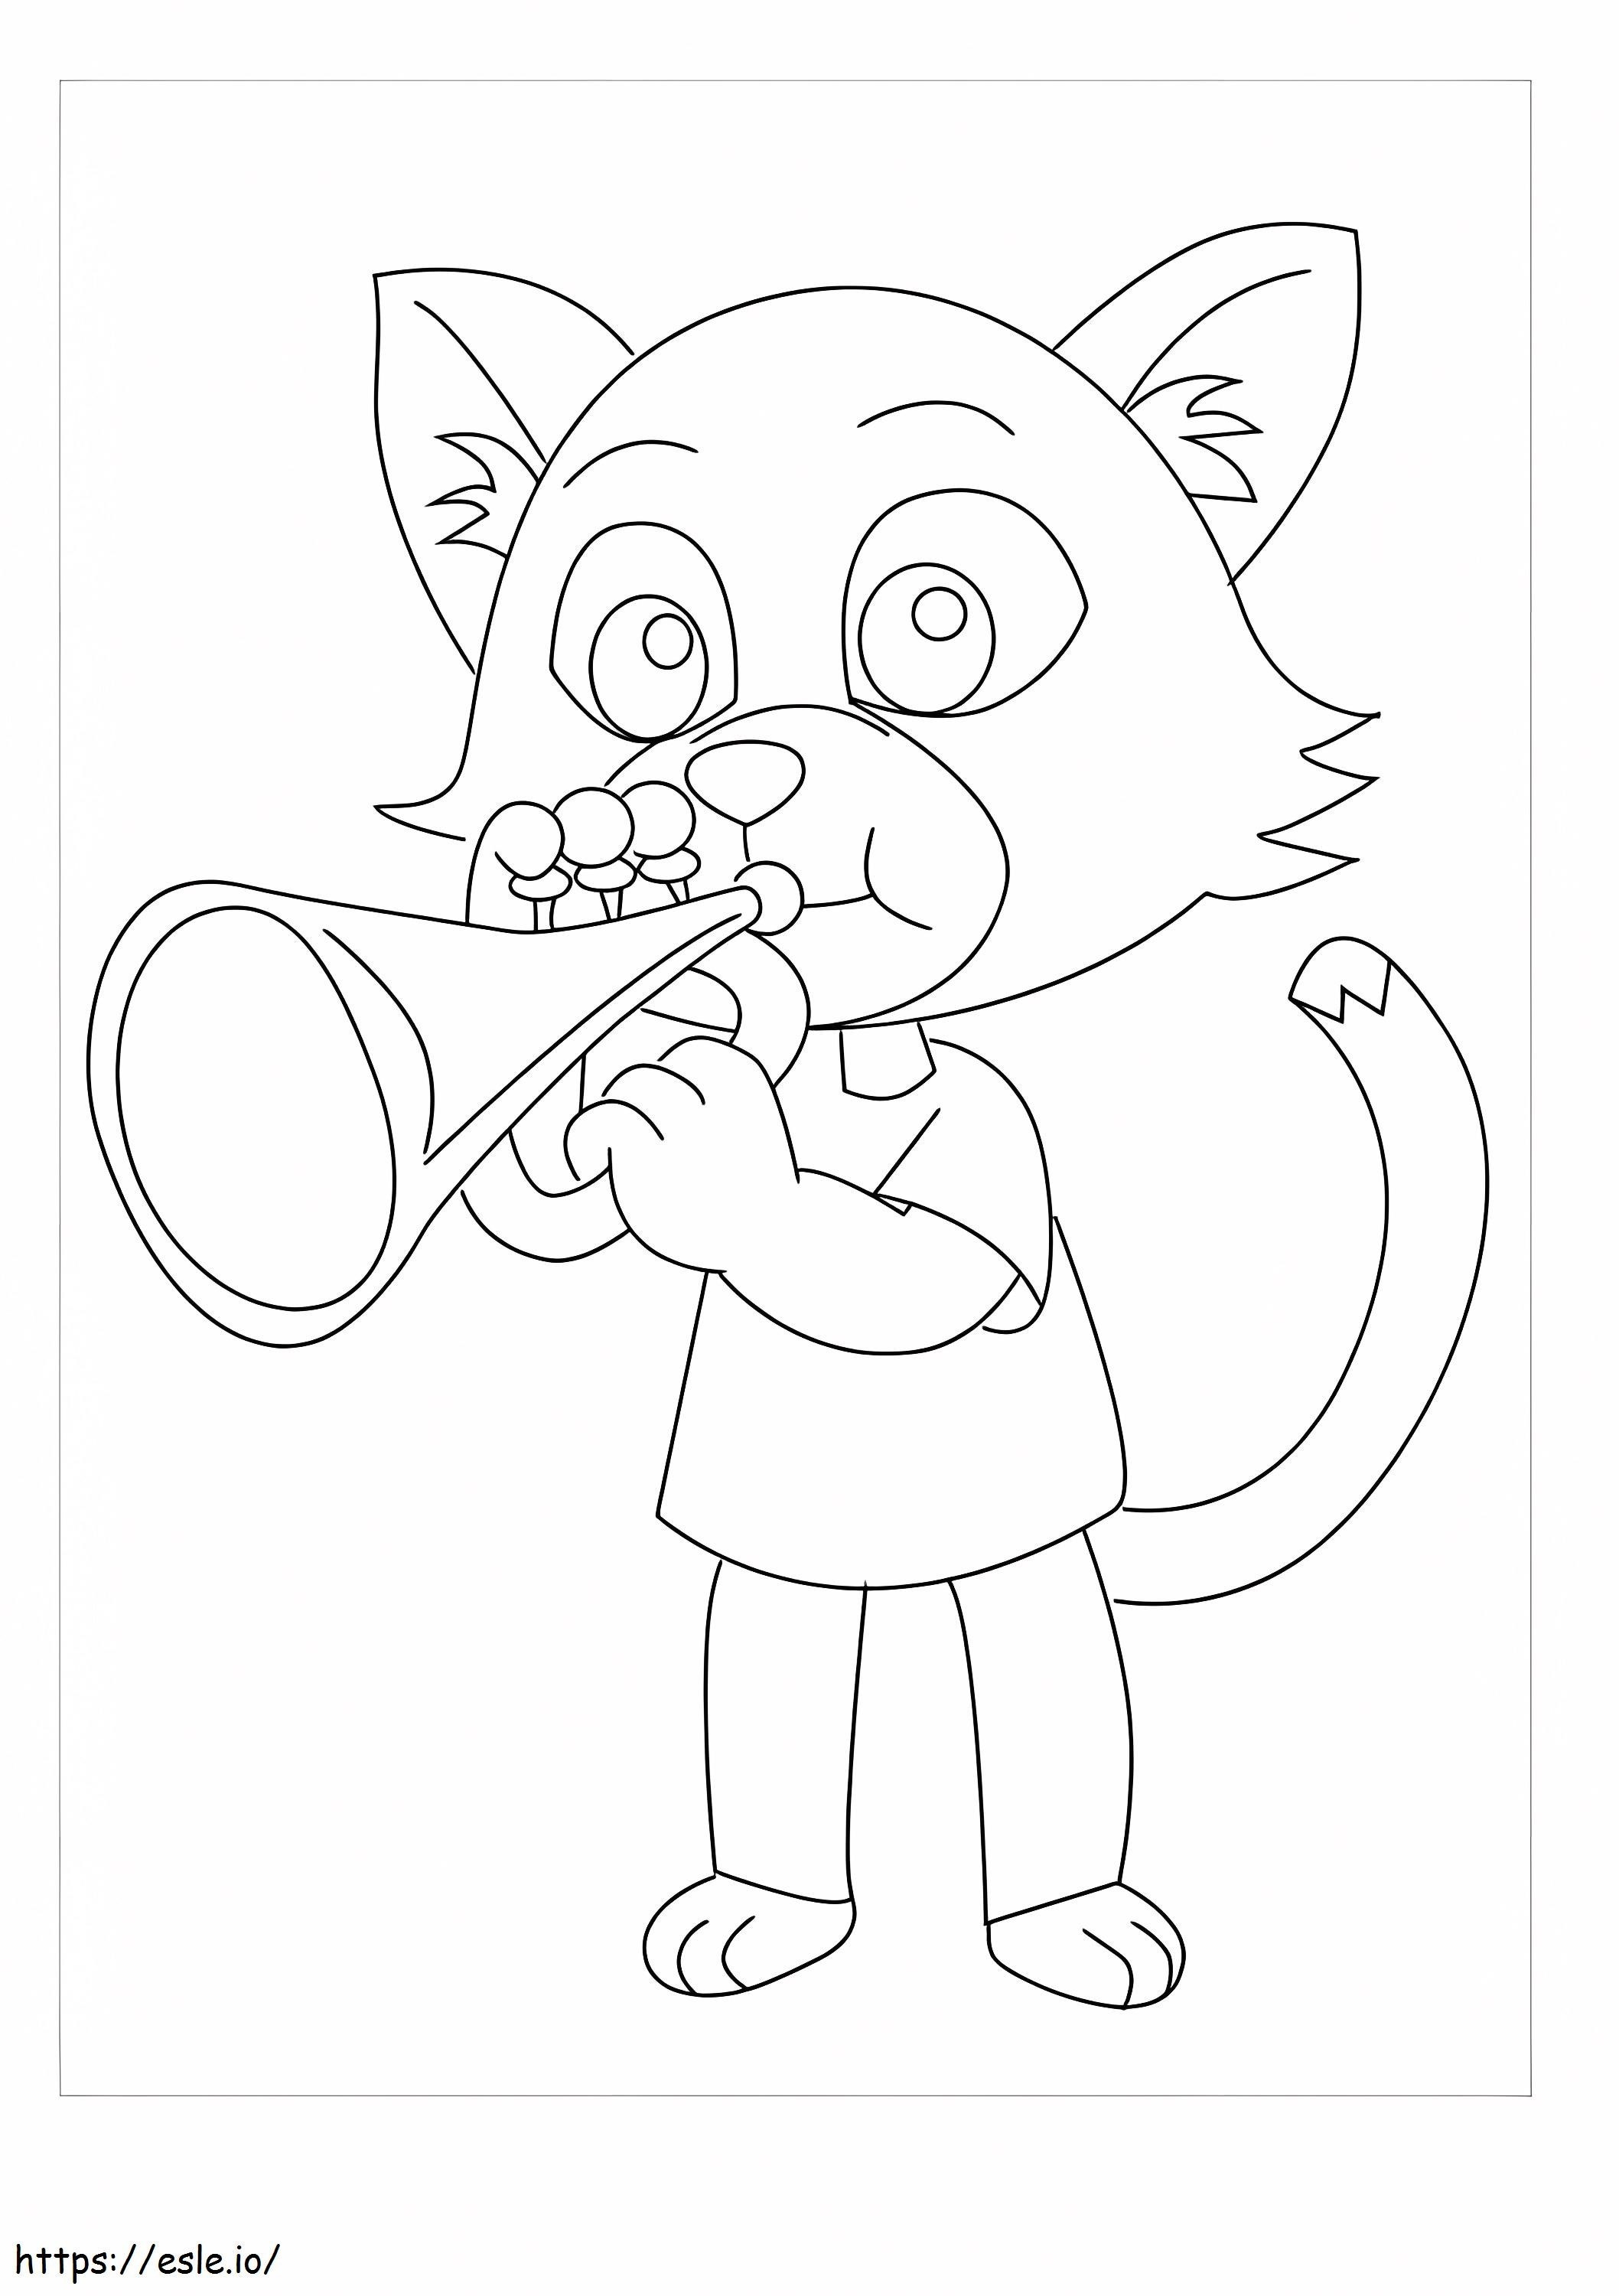 Kot rysunkowy dmuchający w trąbkę kolorowanka